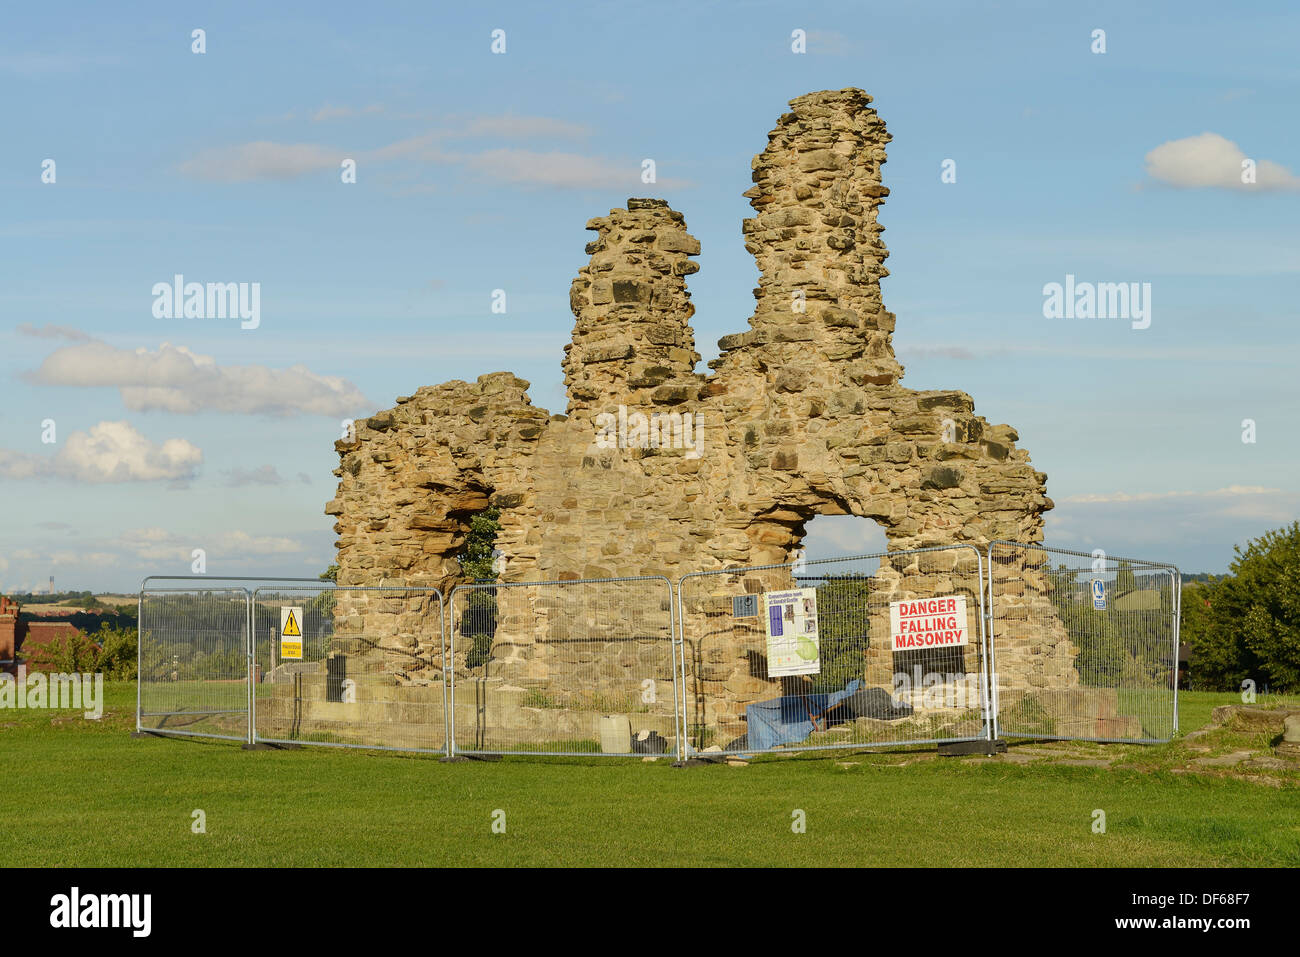 Des ruines et des travaux de réparation dans le château de Sandal Wakefield UK Banque D'Images